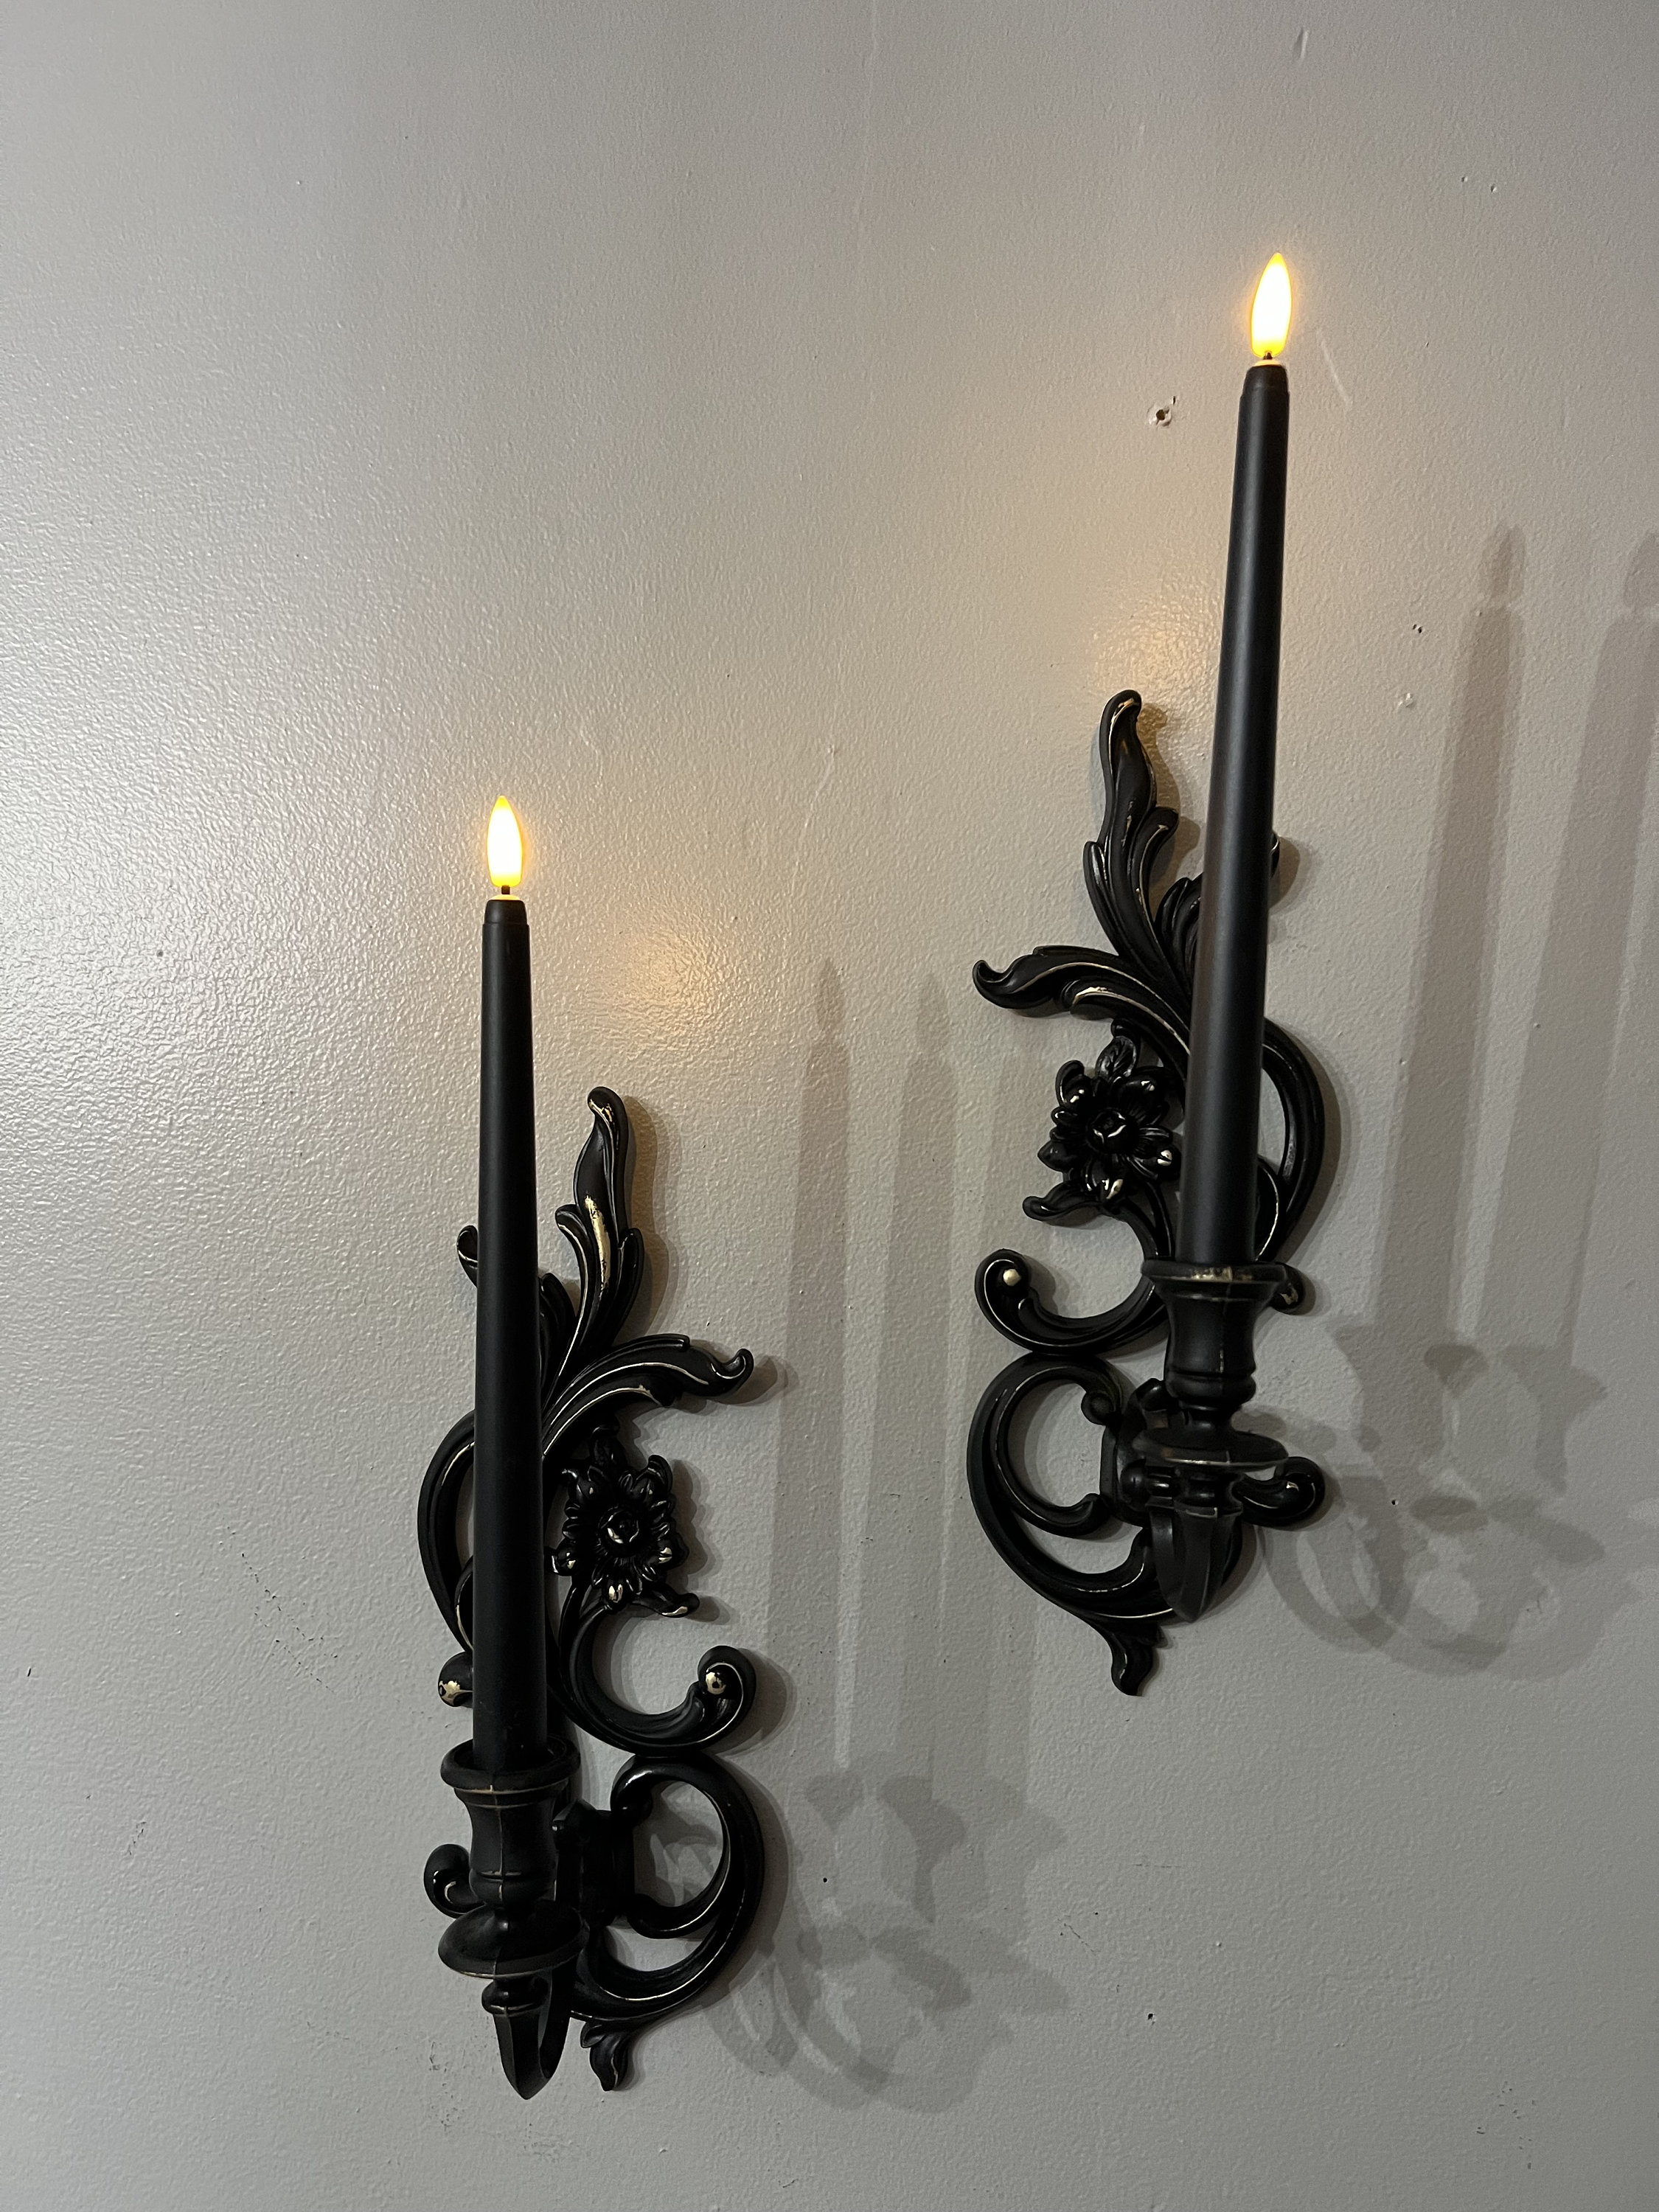 Gothic Classic Large Pillar Candle Holder, Gothic Decor, Gothic